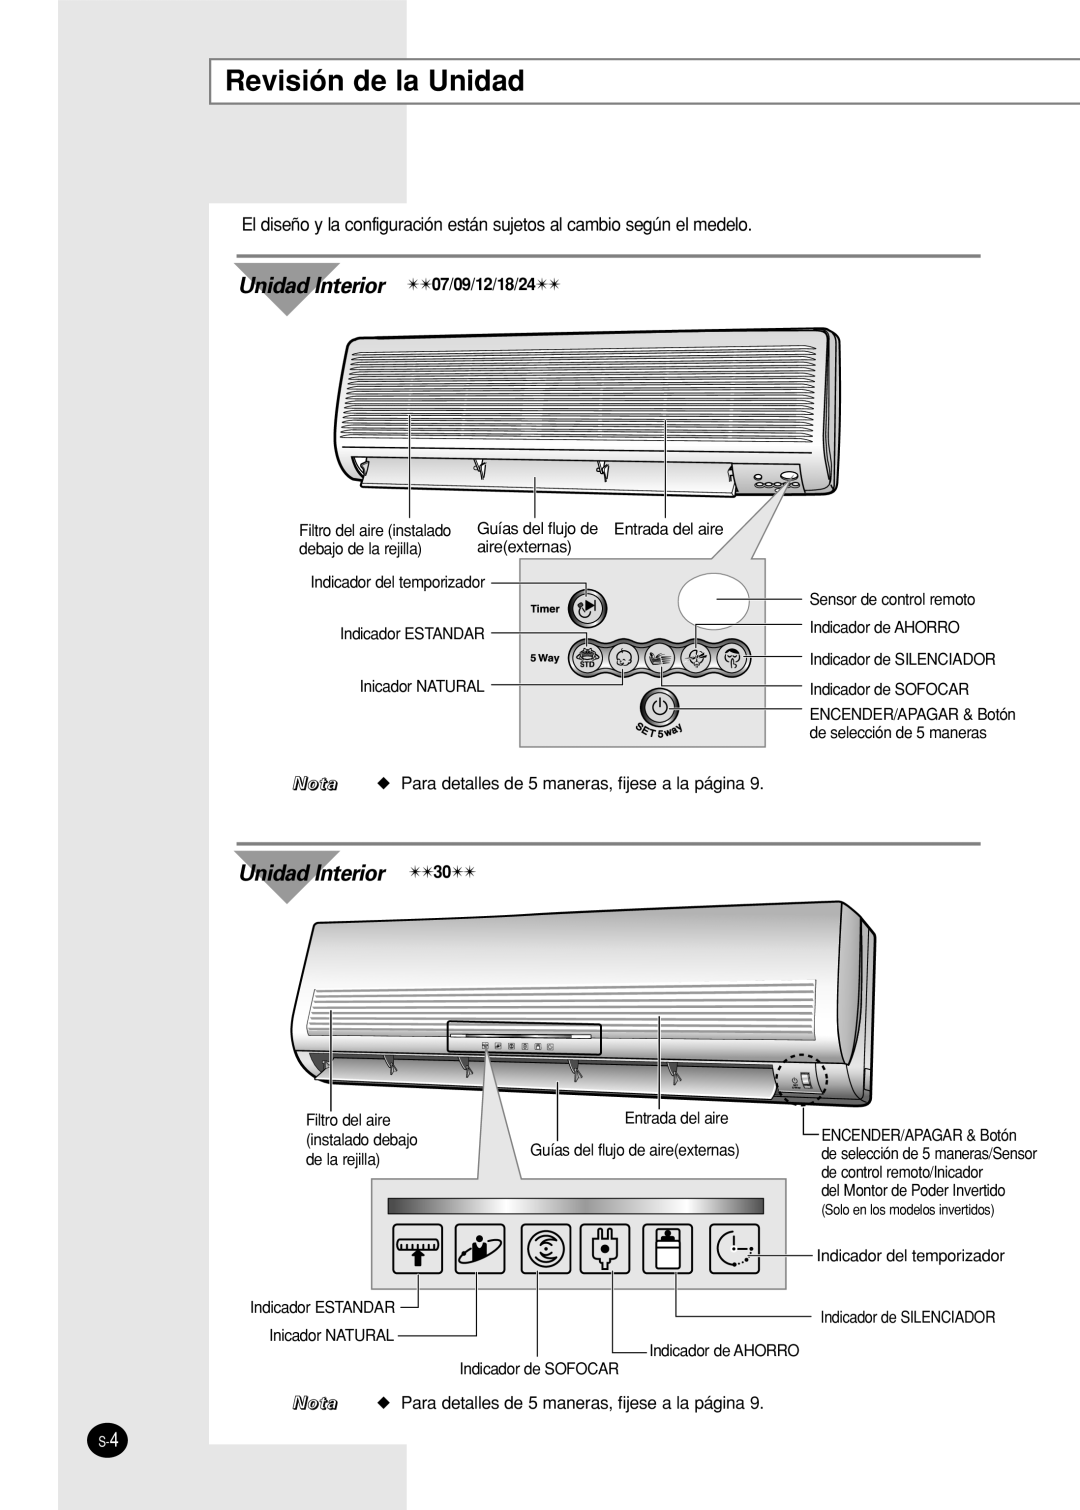 Samsung US18A9(0)RCF, US30C1(2)BC, US24A1(2)RC, US07A5(6)MA Revisión de la Unidad, Unidad Interior 07/09/12/18/24 